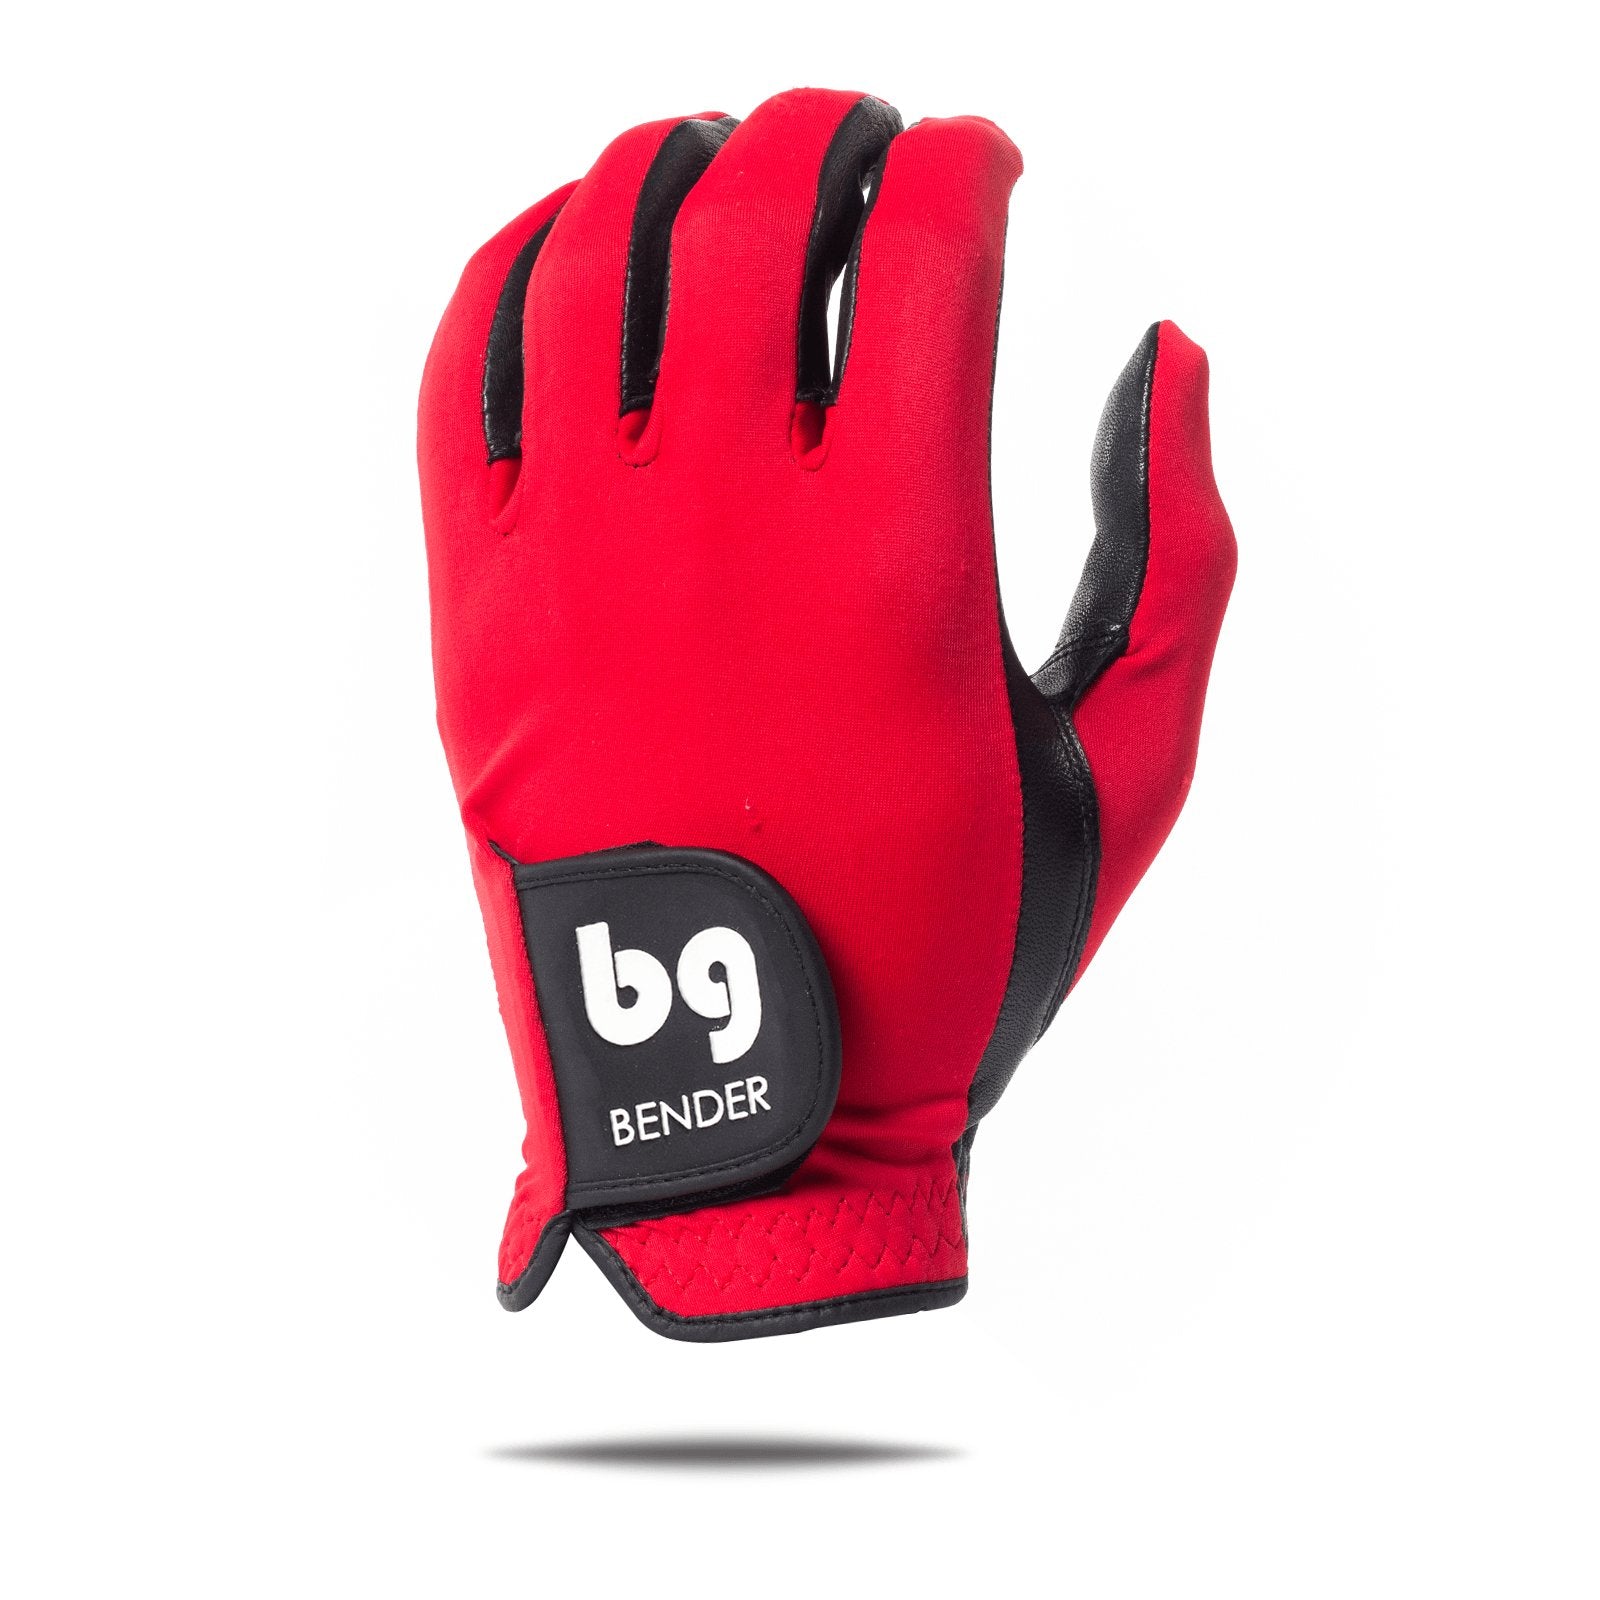 Red Spandex Golf Glove - Bender Gloves